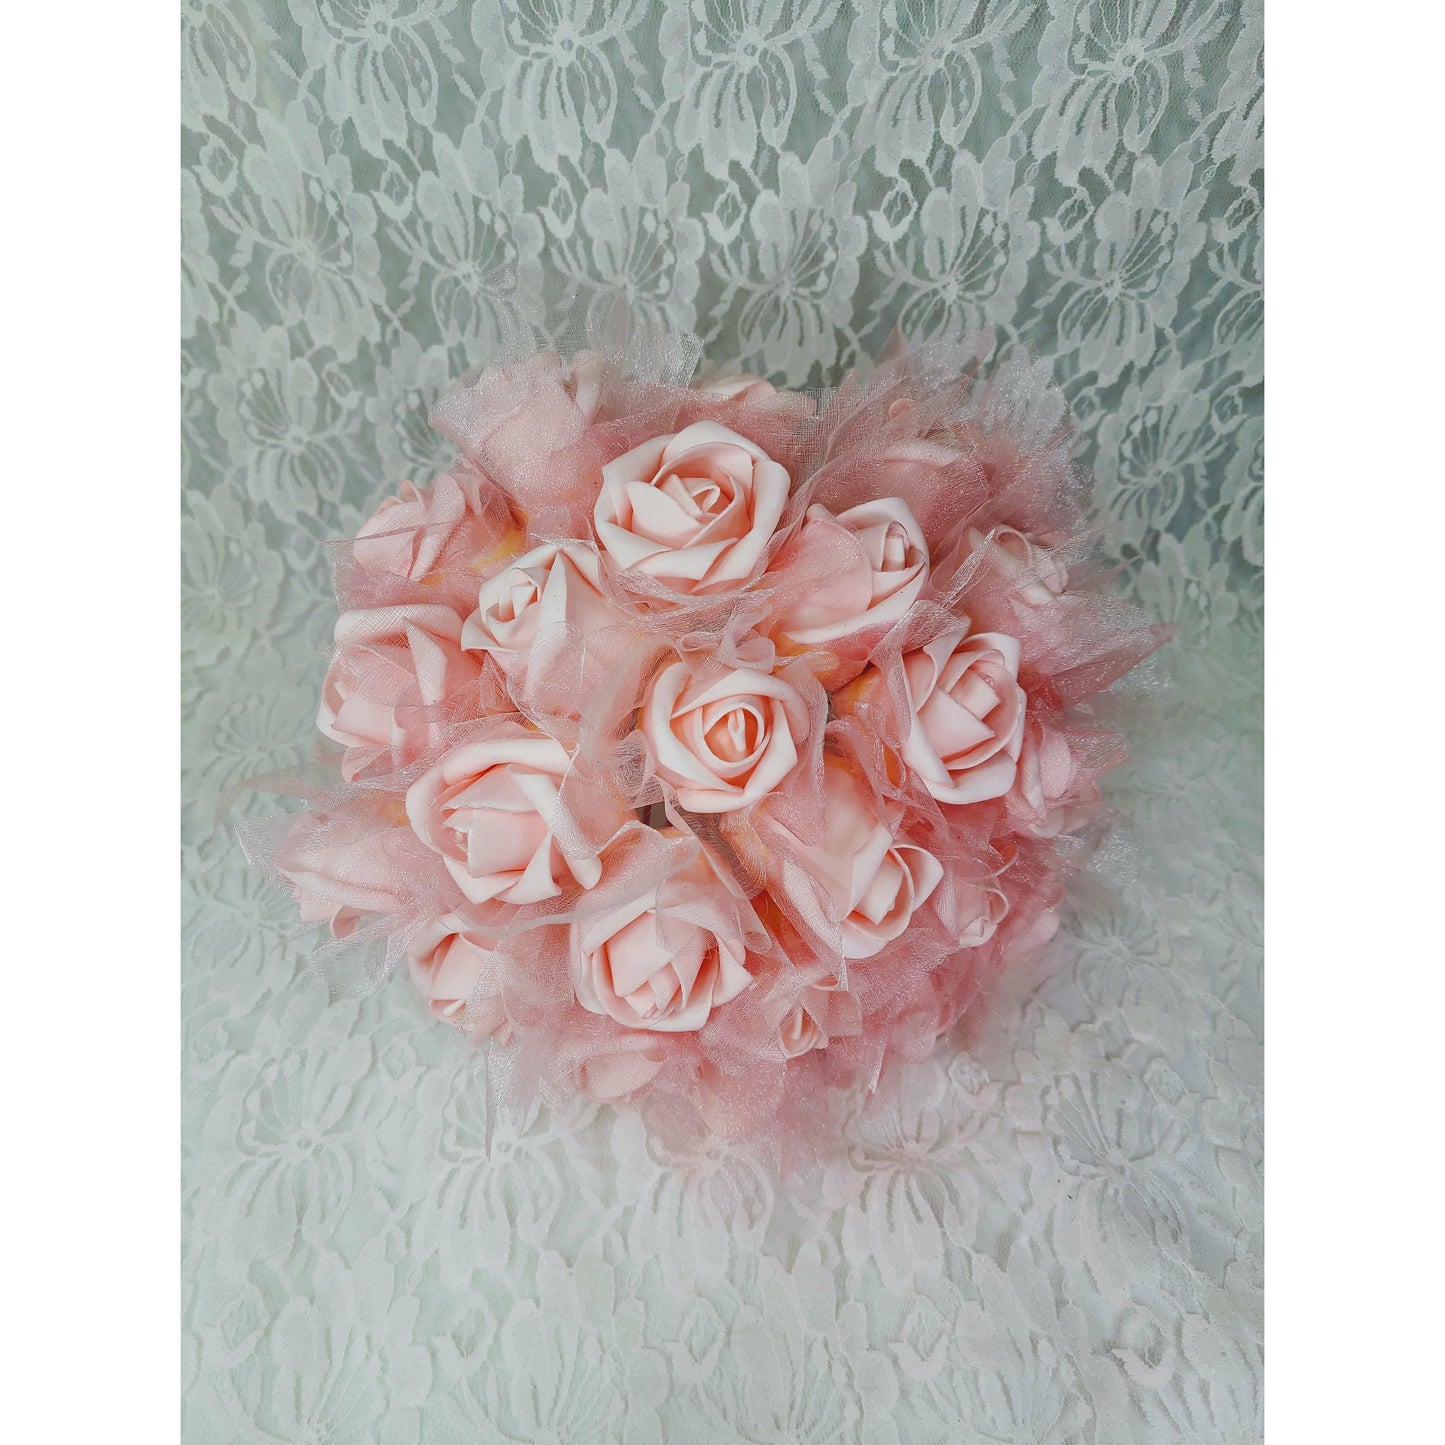 Pink Rose Buds Bouquet Faux Silk Floral Arrangement Wedding Flowers Centerpiece Décor Decorations Floral Arrangement